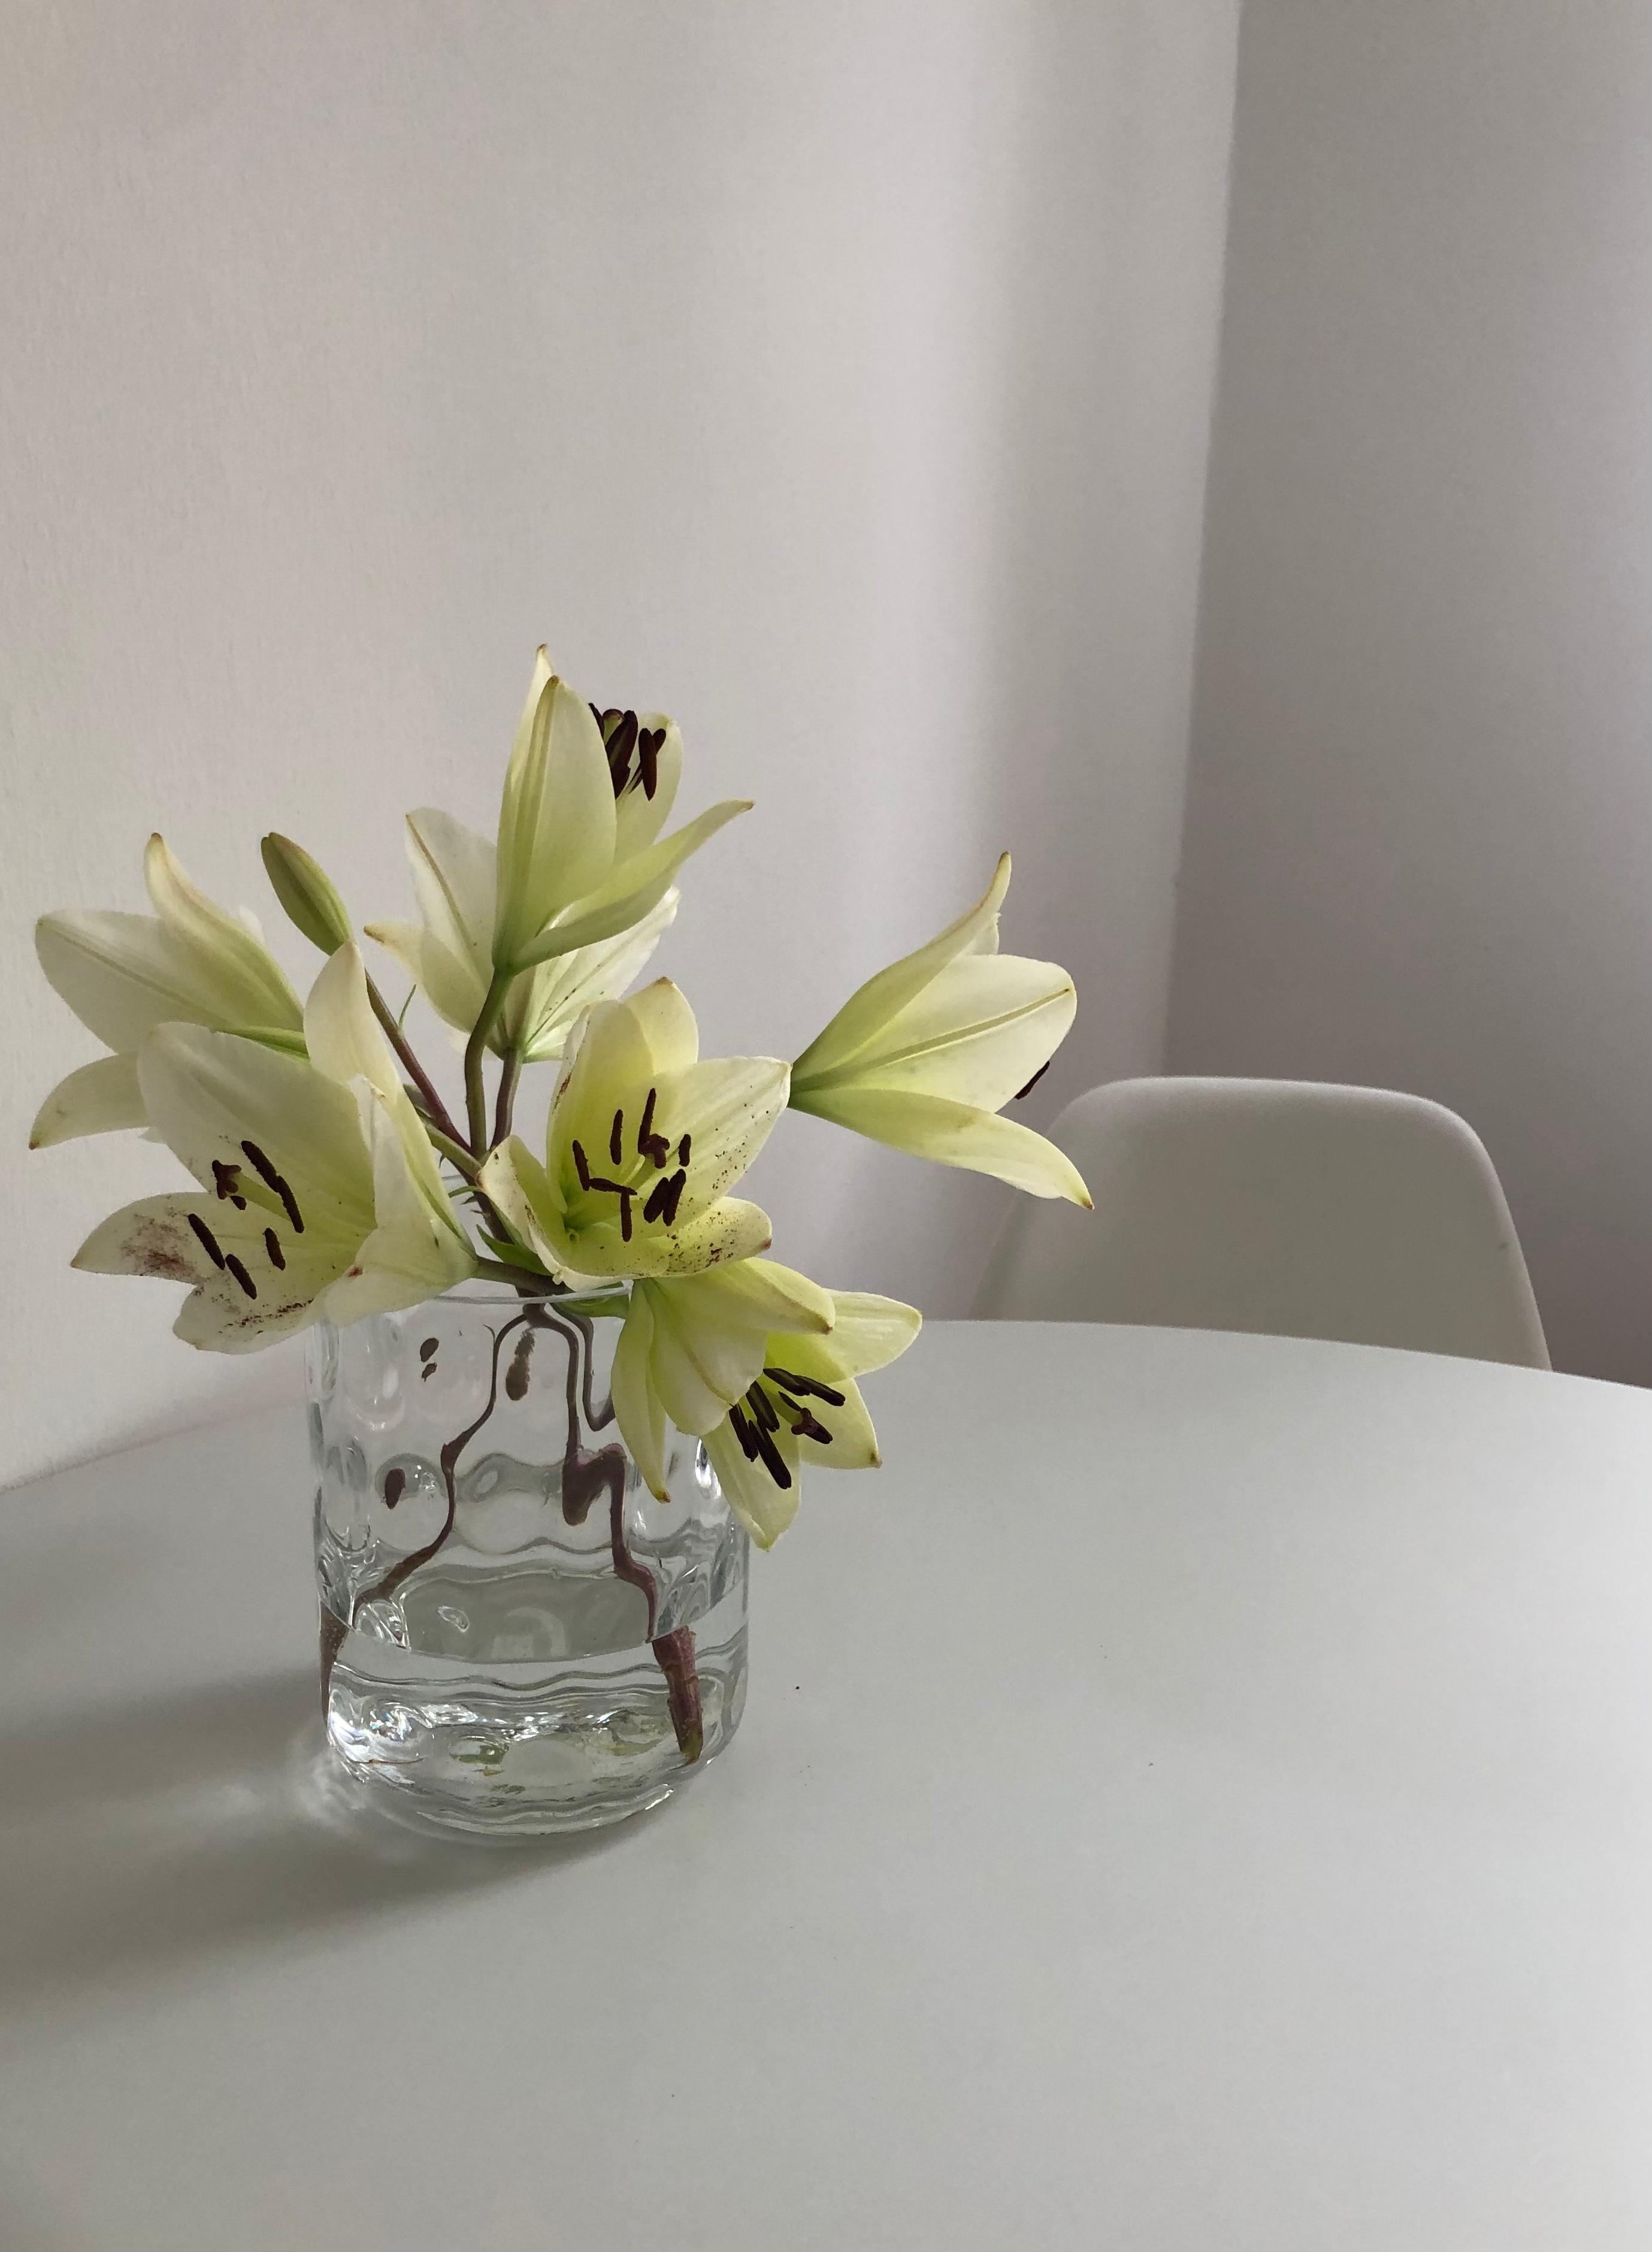 Willkommen neue  #Vintage Vase 🤍 #sonntag #eameschair #eames #eamessidechair #tuliptisch #lilien